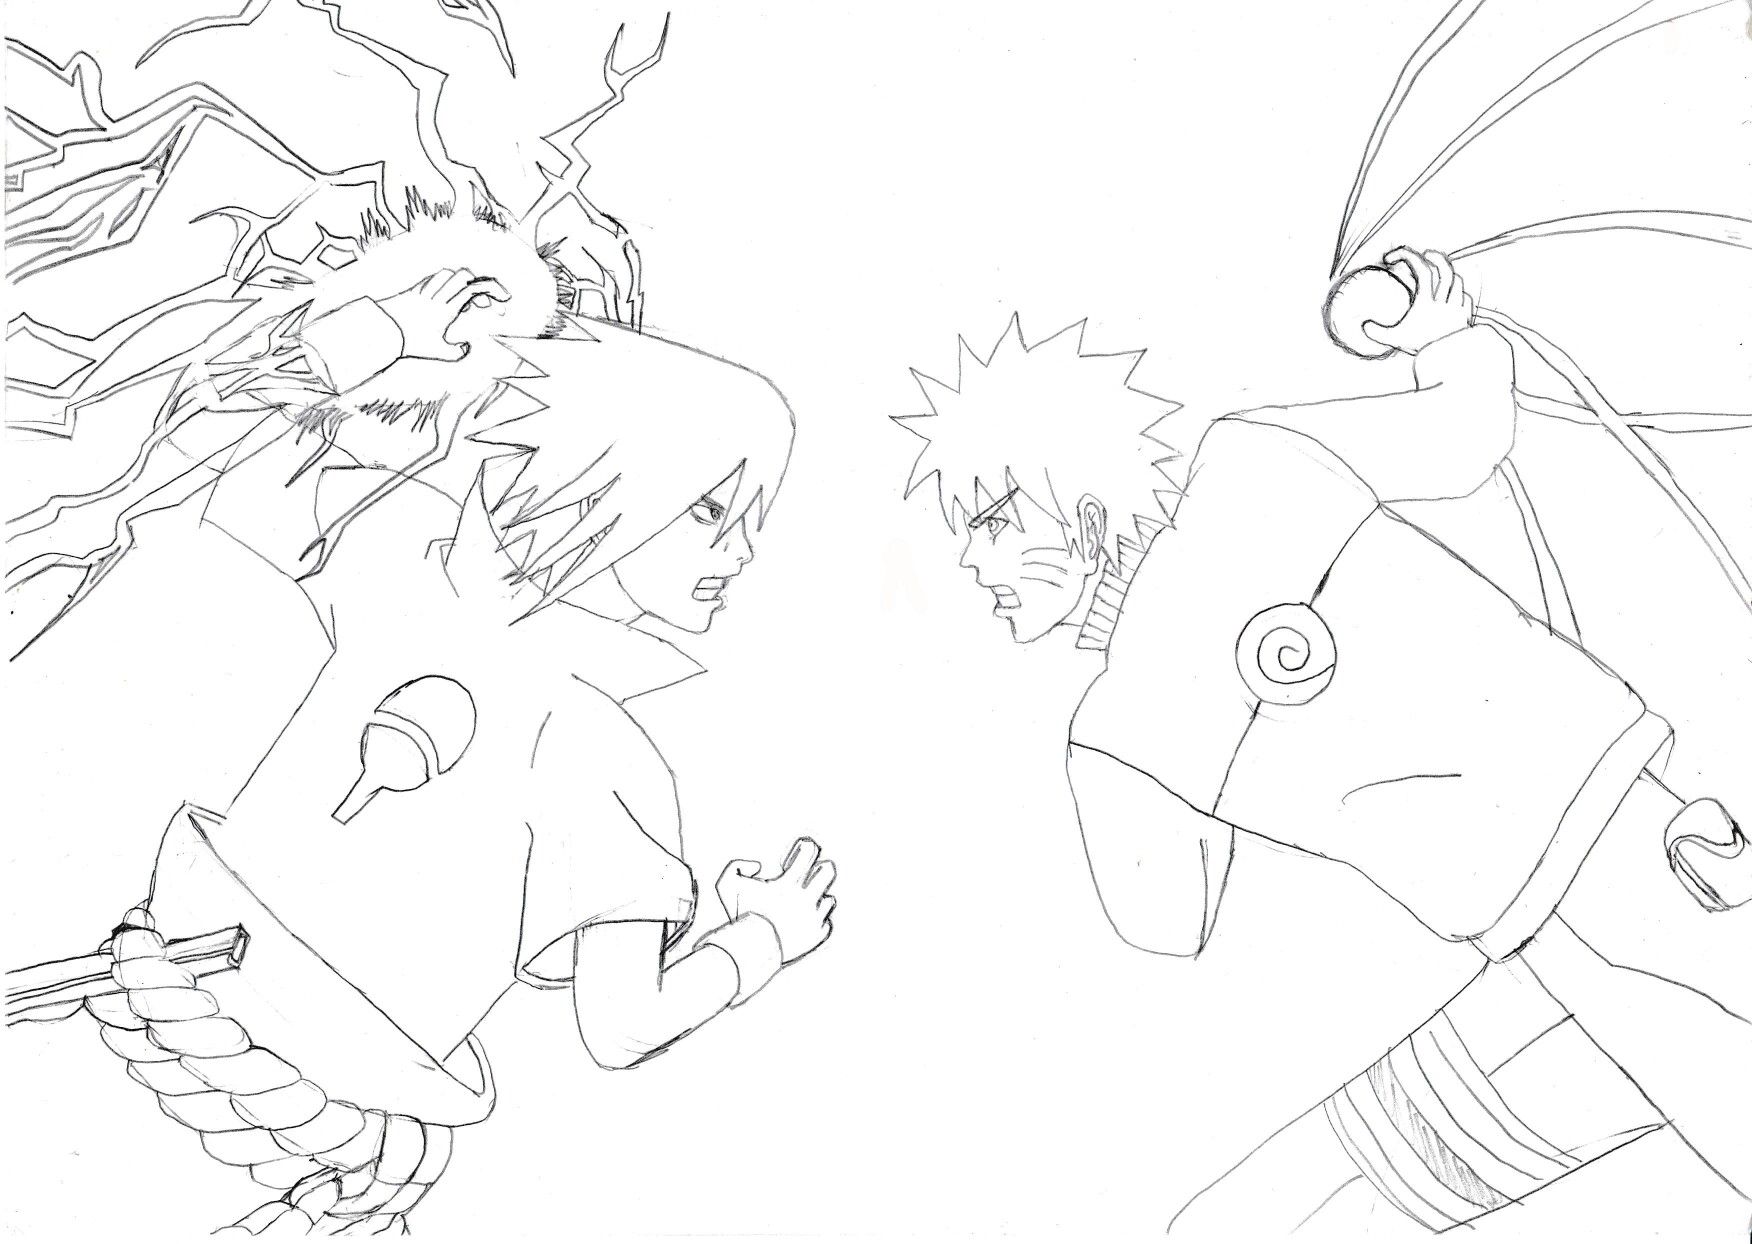 Naruto shippuden chidori vs rasengan coloring pages naruto drawings naruto vs sasuke